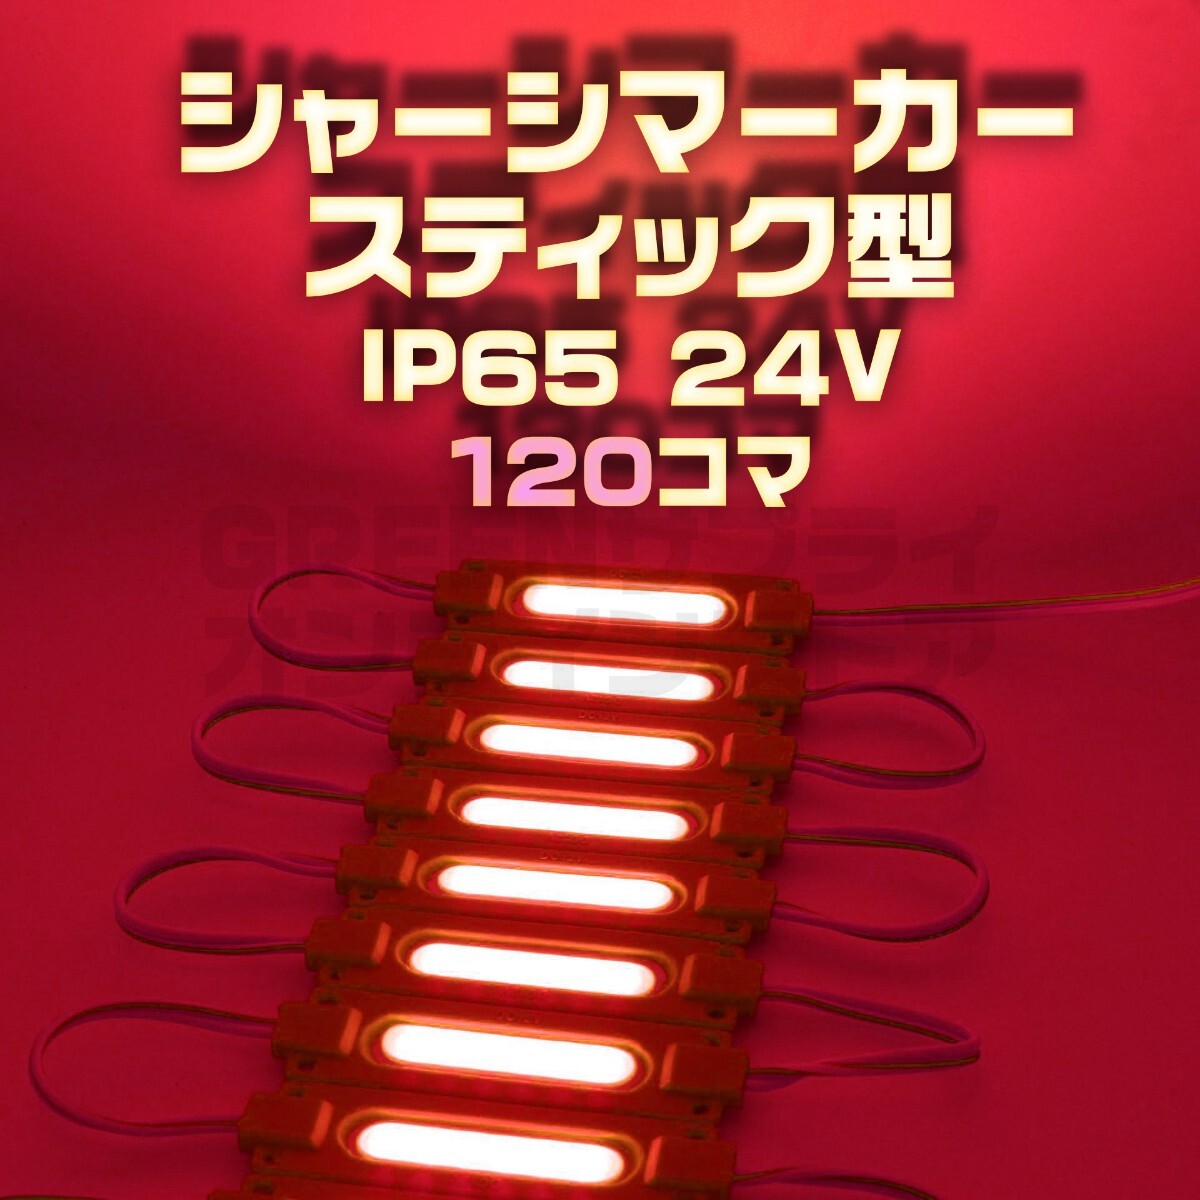 スティック シャーシマーカー 20コマ×6セット 120個 24V LED 赤 _画像1